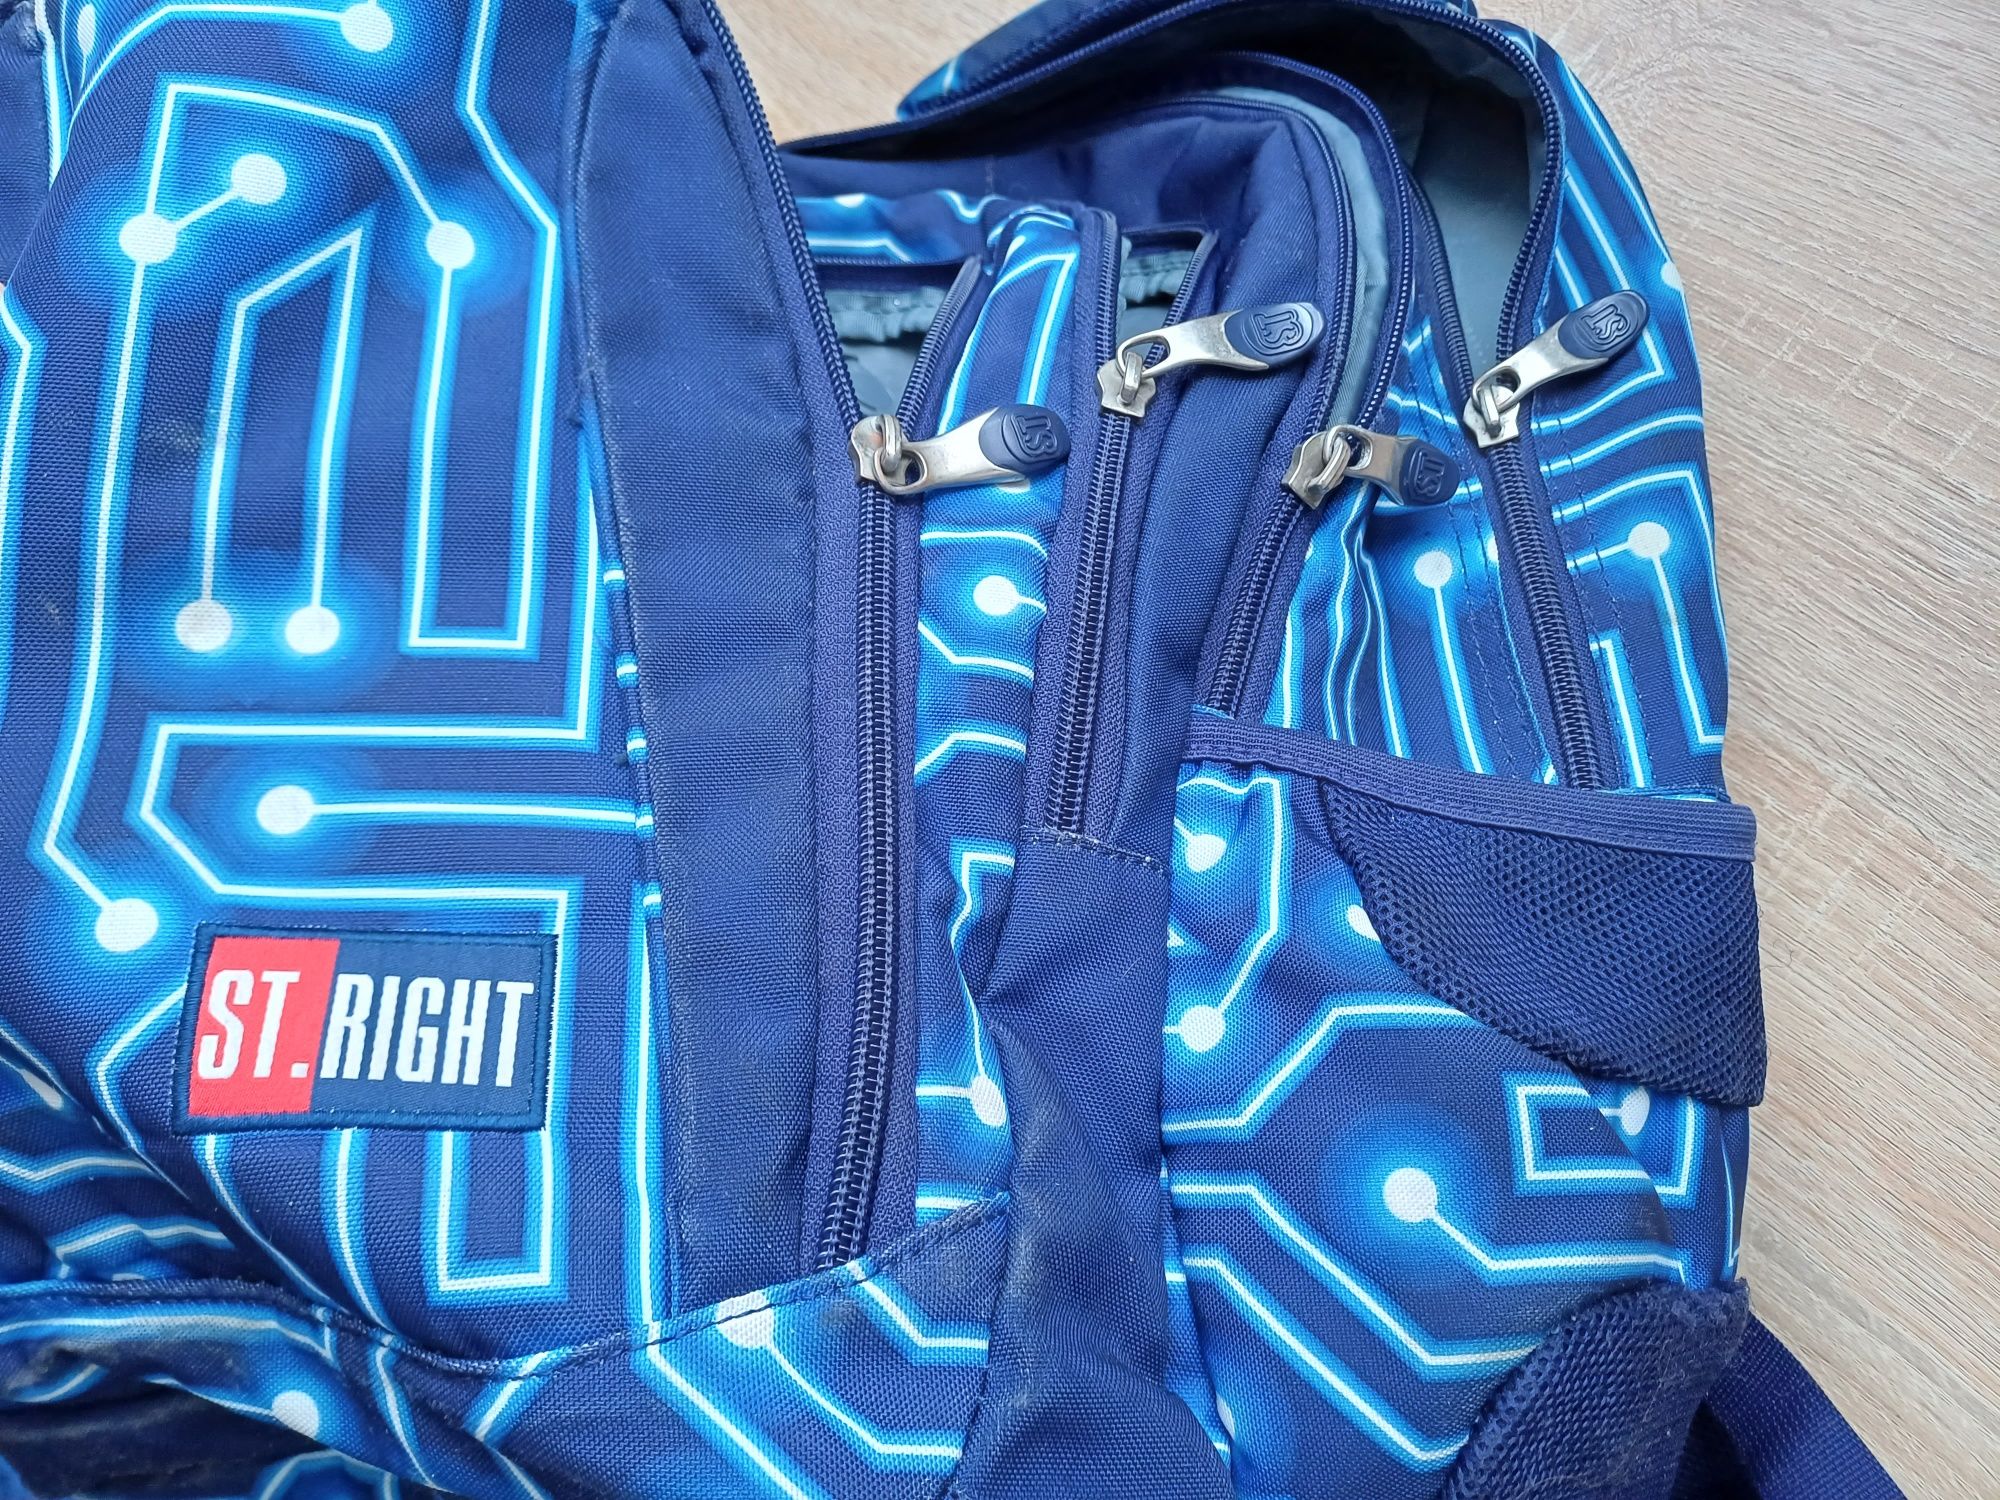 Plecak szkolny pojemny z organizerem St Right niebieski